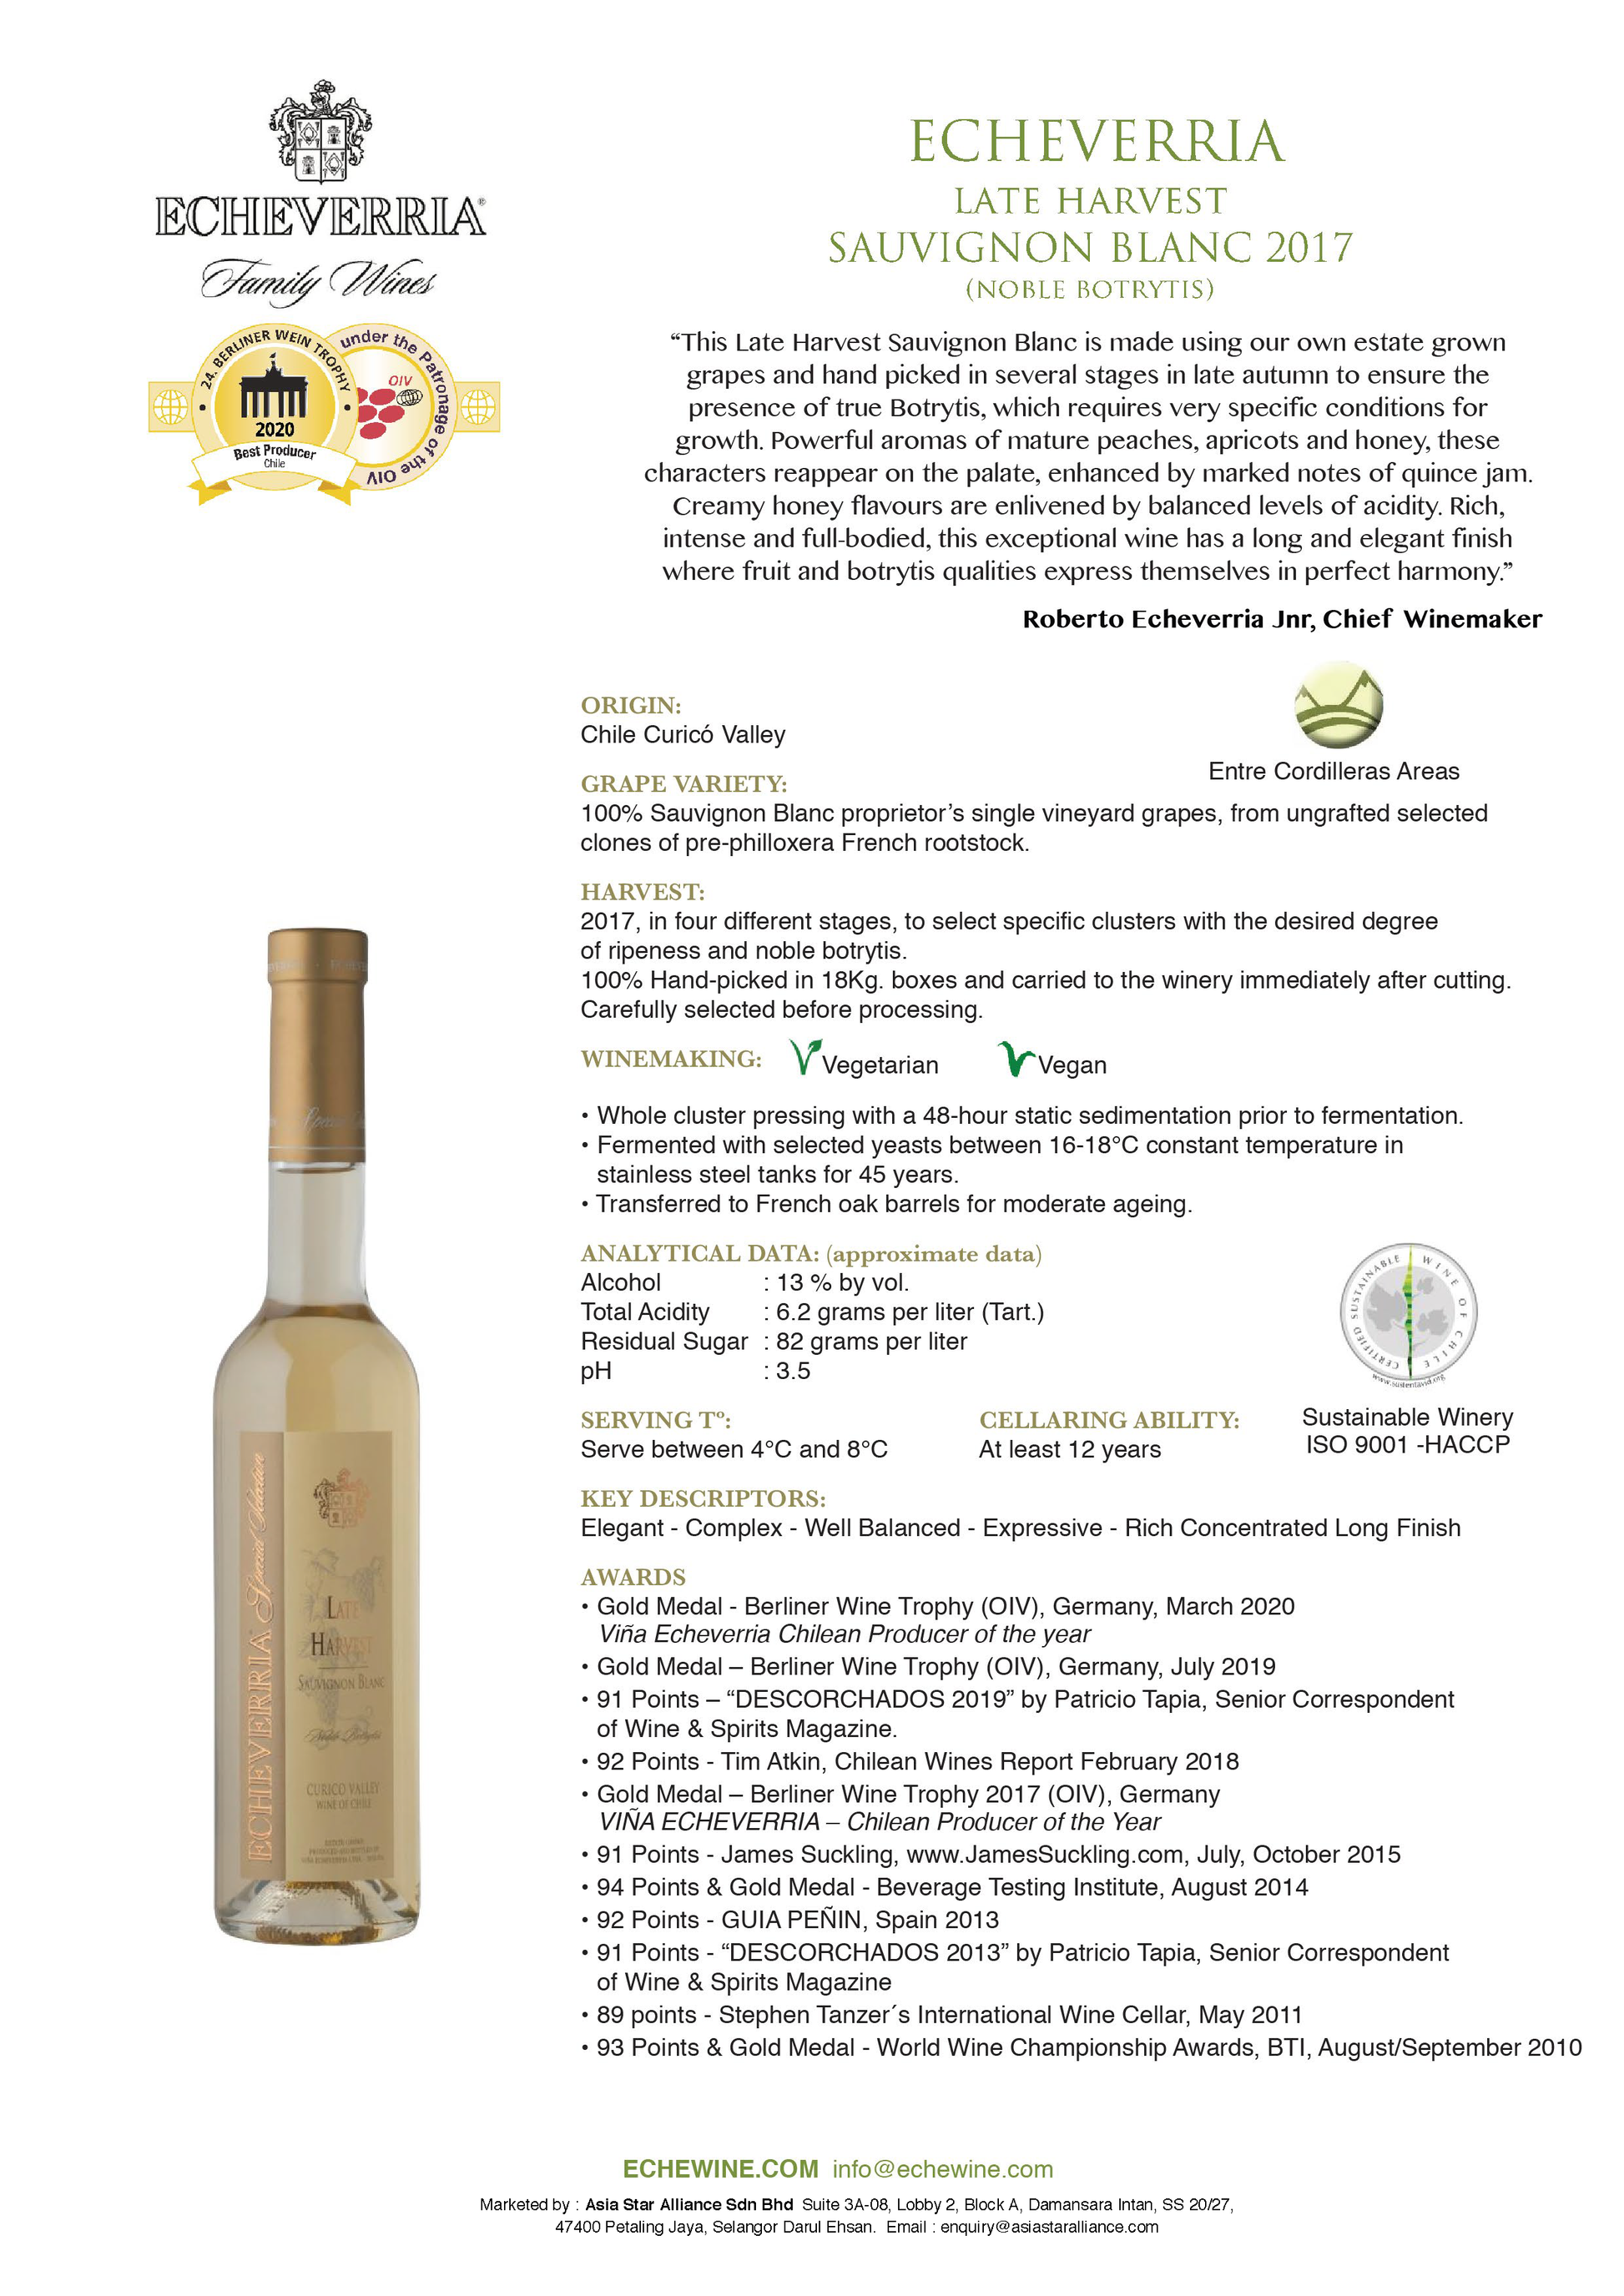 echeverria-late-harvest-sauvignon-blanc-2017